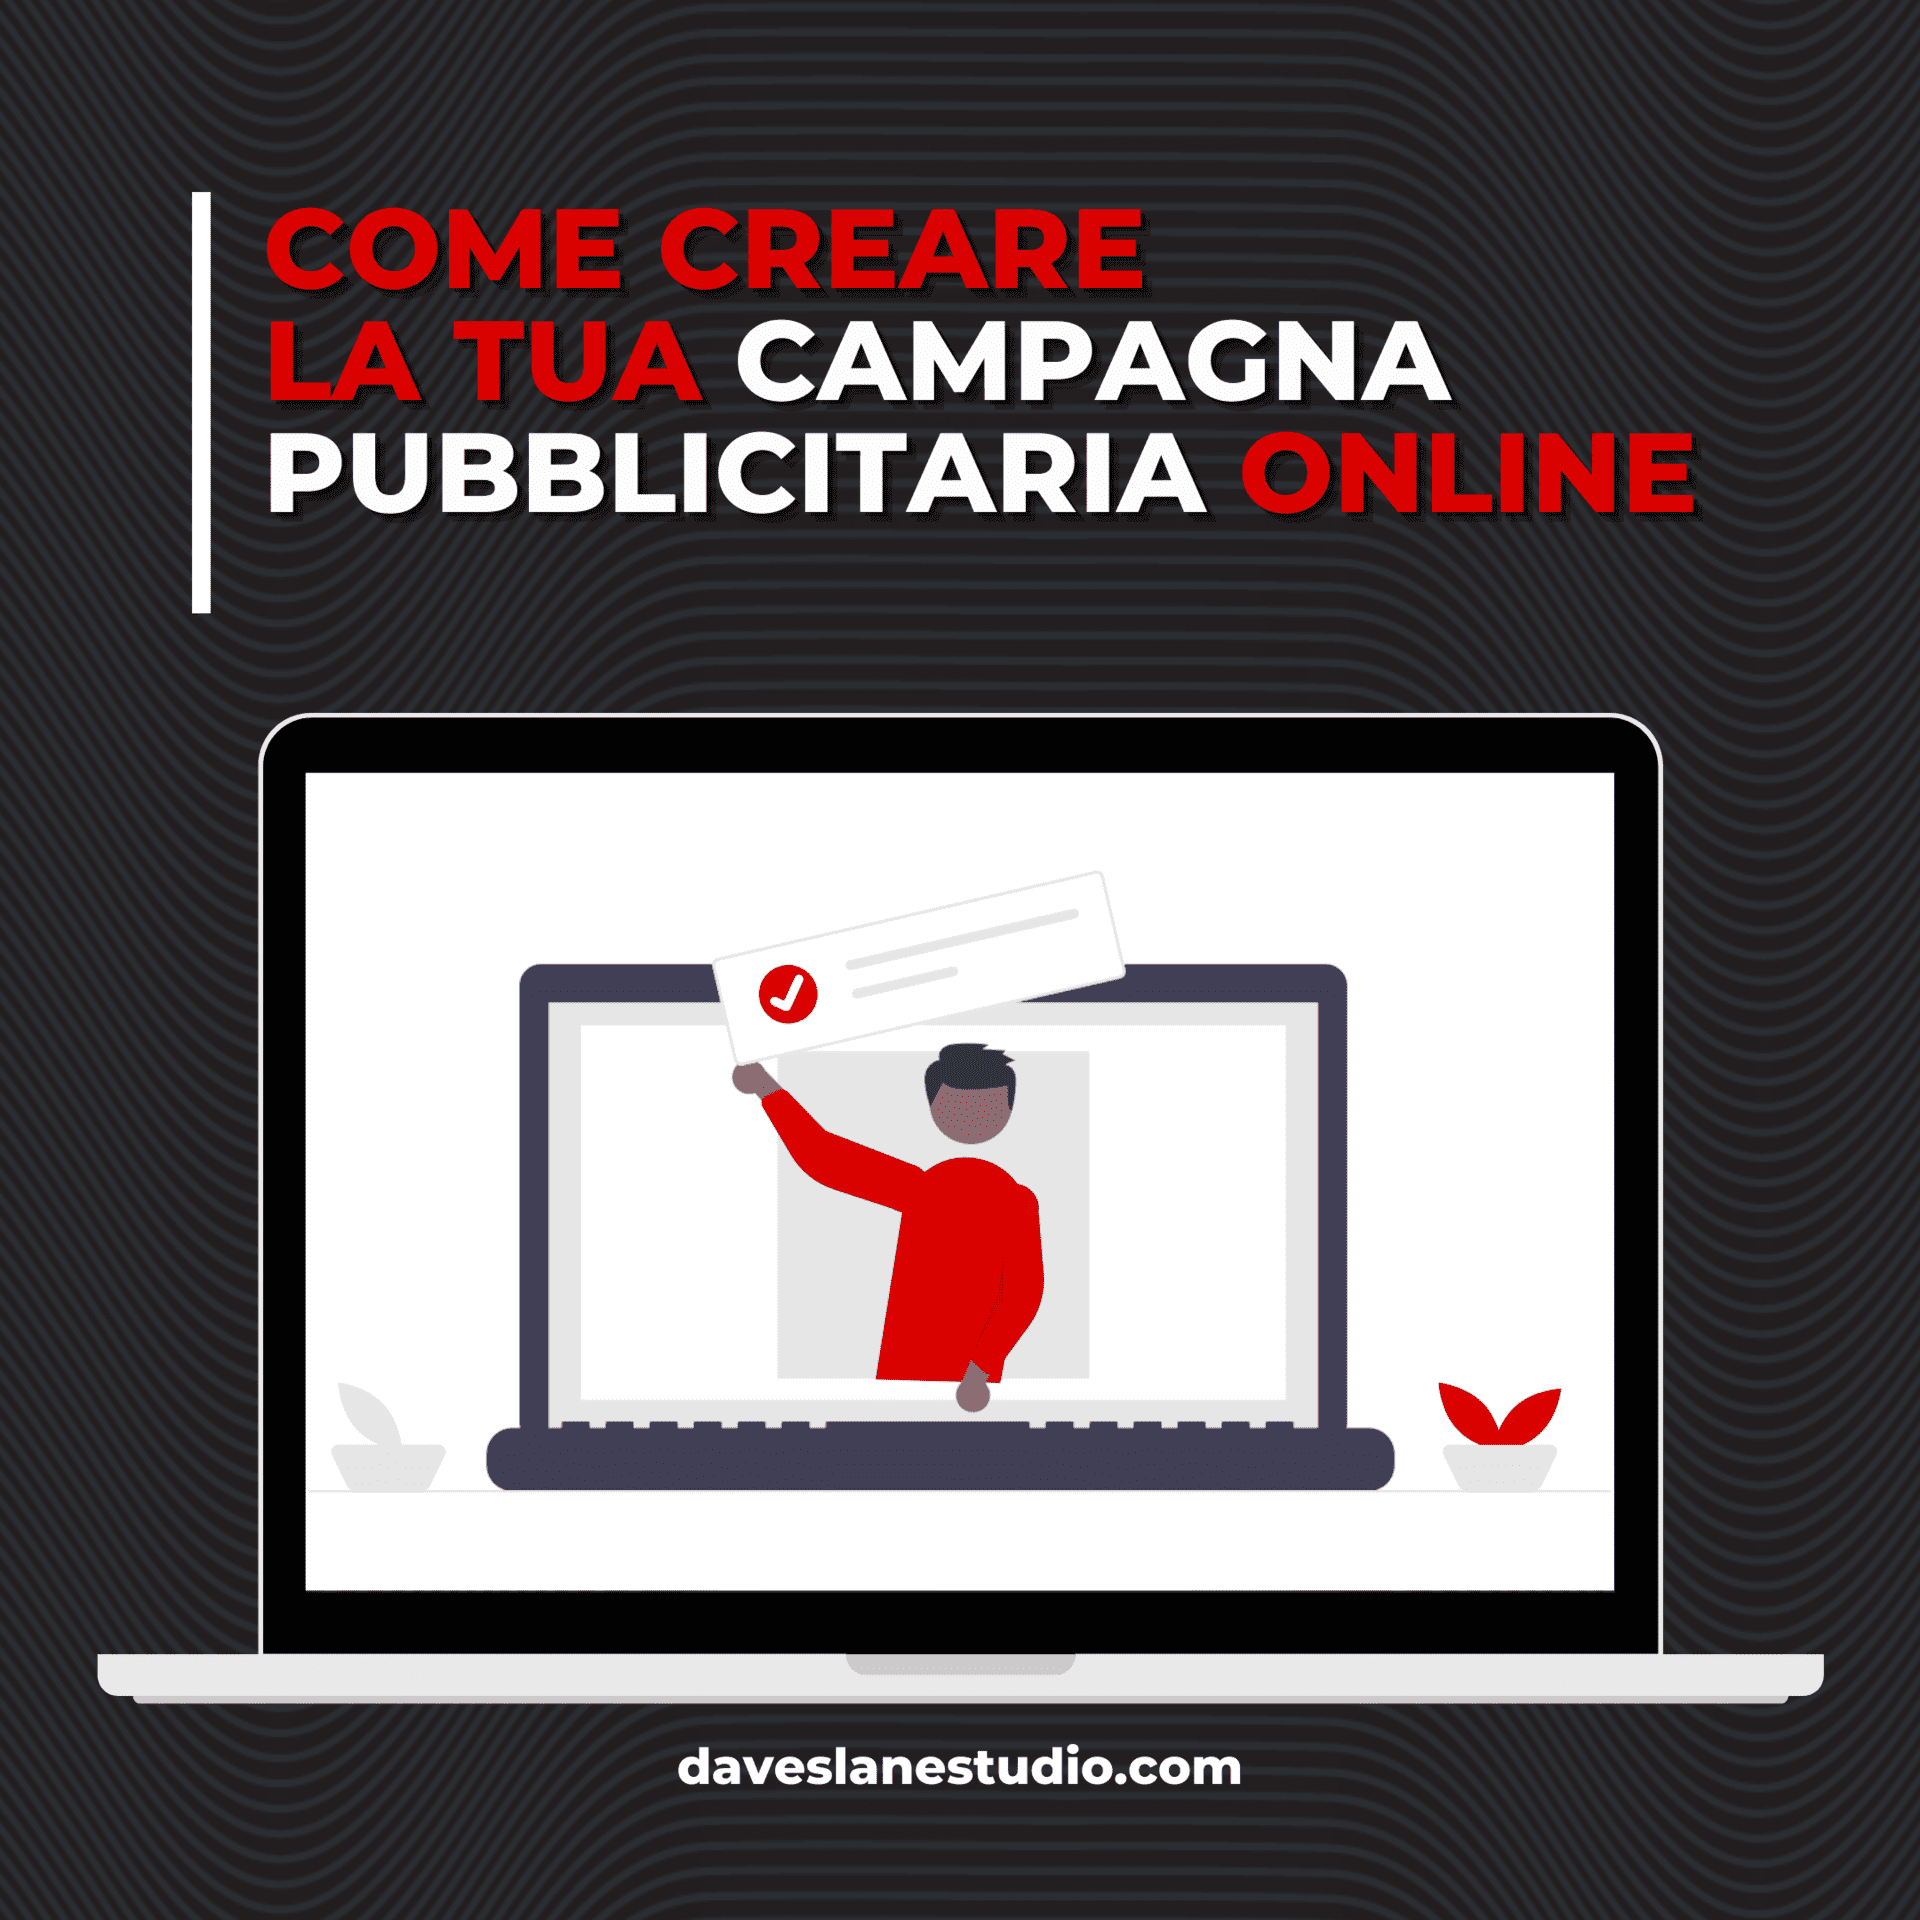 Come creare la tua campagna pubblicitaria online dave slane studio